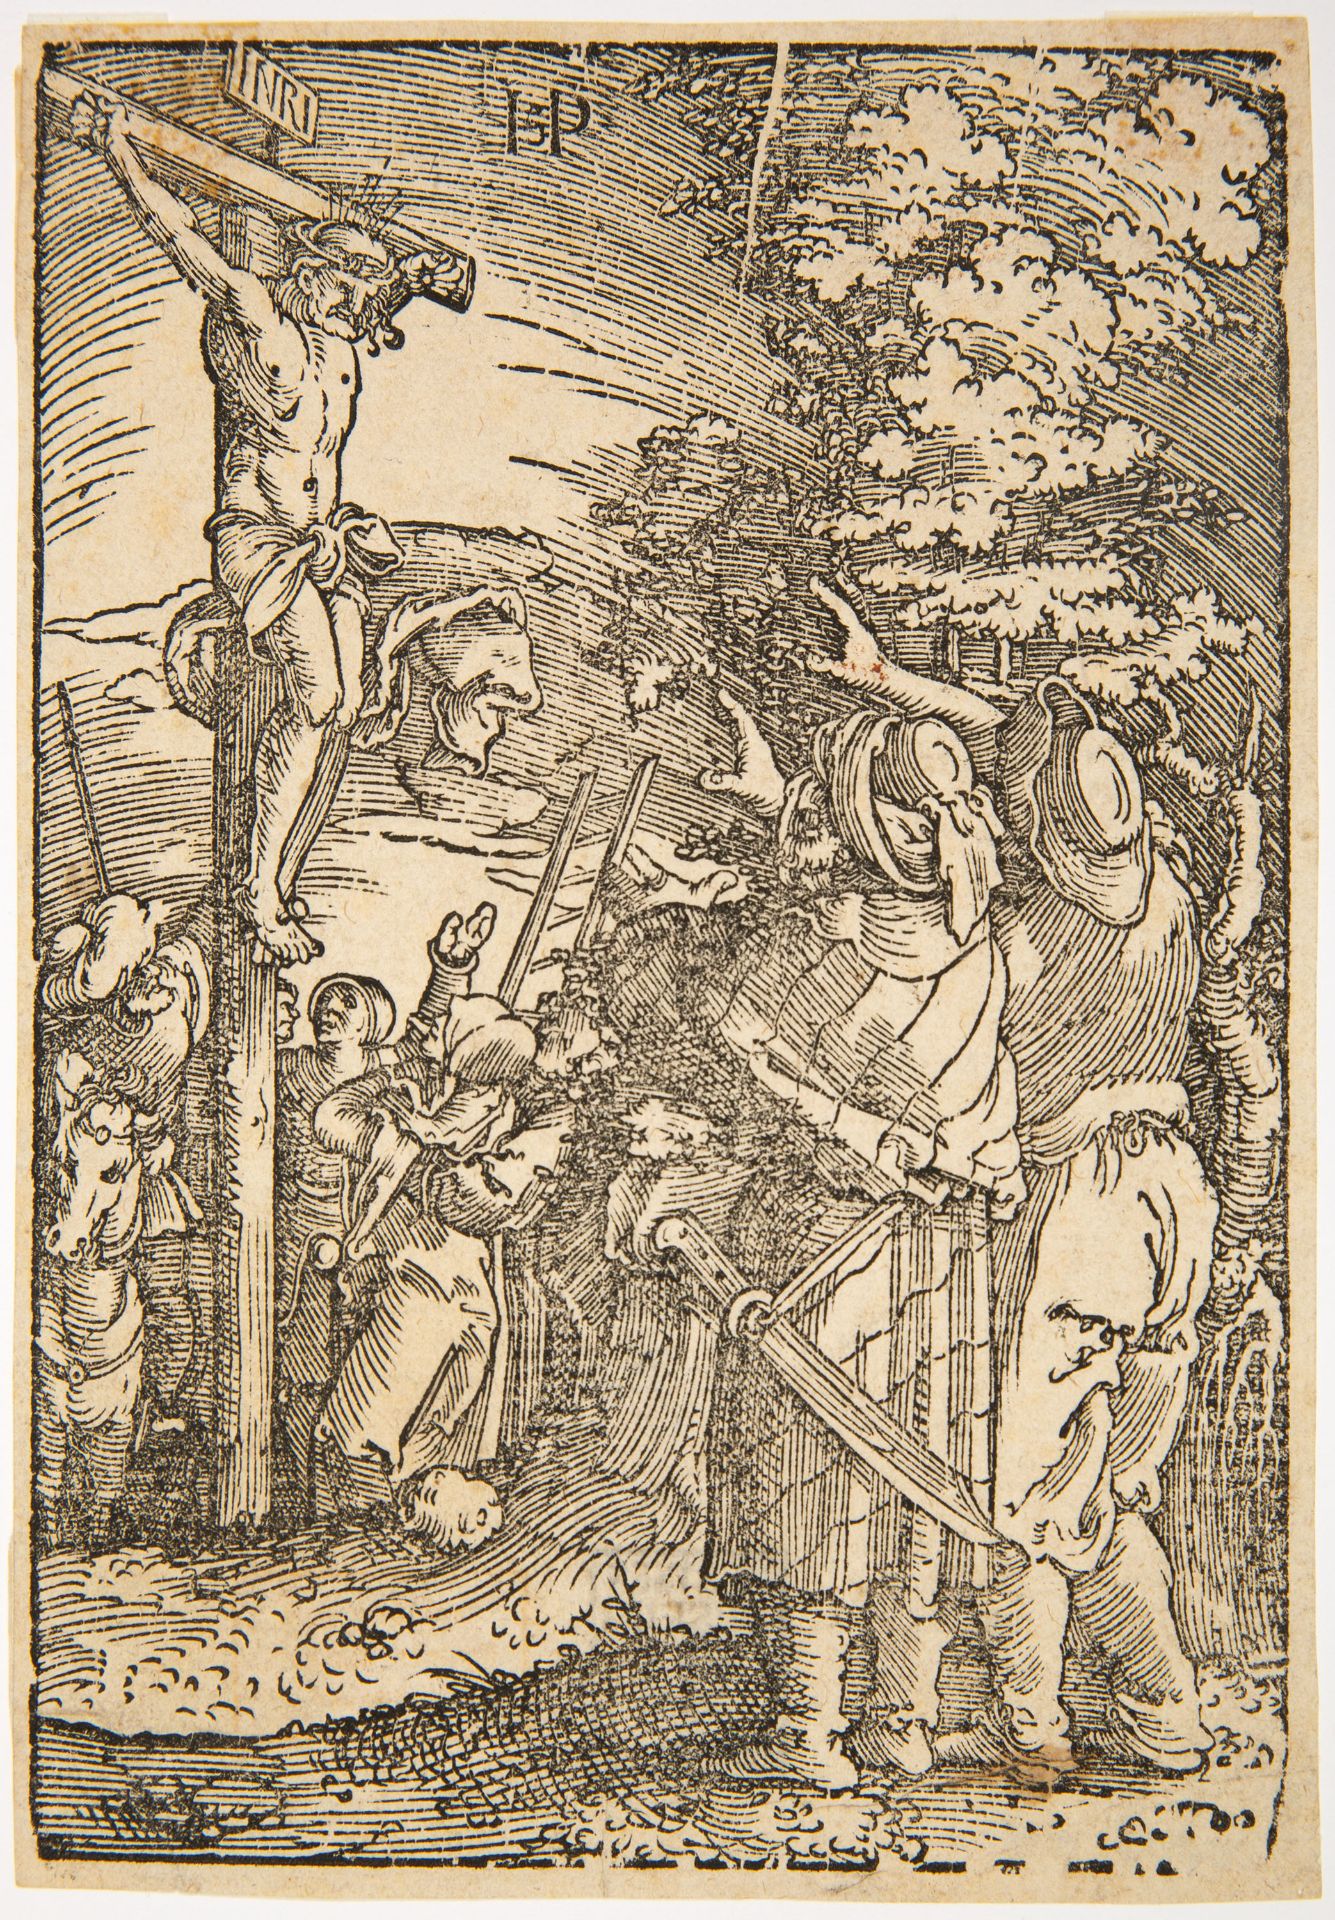 Hans Sebald Beham. Christus am Kreuz. 1521. Holzschnitt. Hollstein 824 II/II.